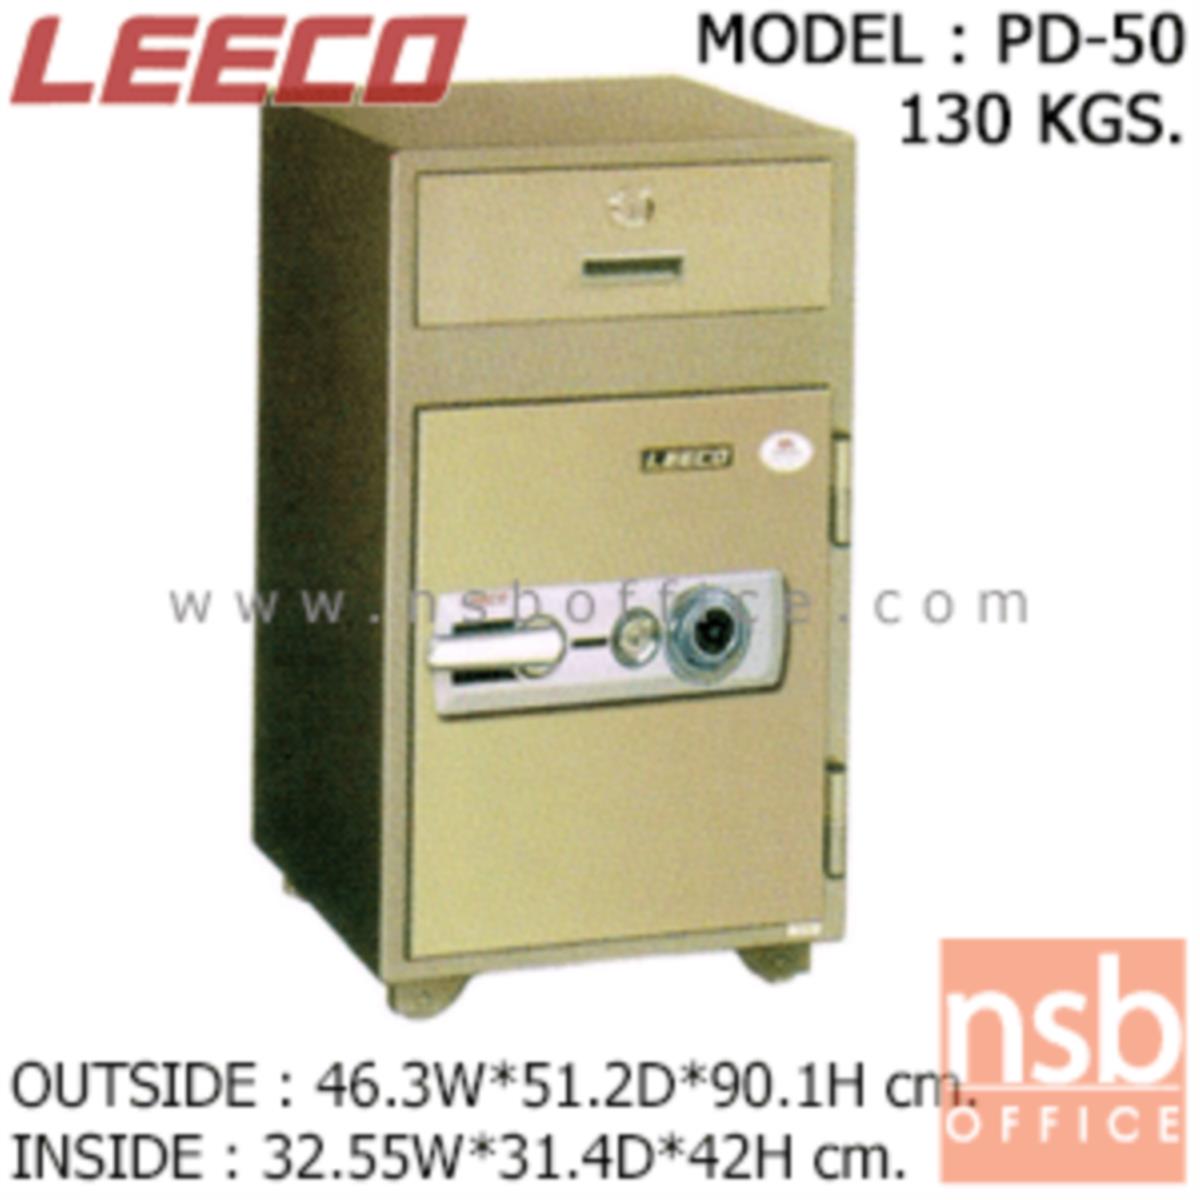 ตู้เซฟแคชเชียร์ 130 กก. ลีโก้ รุ่น LEECO-PD-50  มี 1 กุญแจ 1 รหัส (เปลี่ยนรหัสไม่ได้)